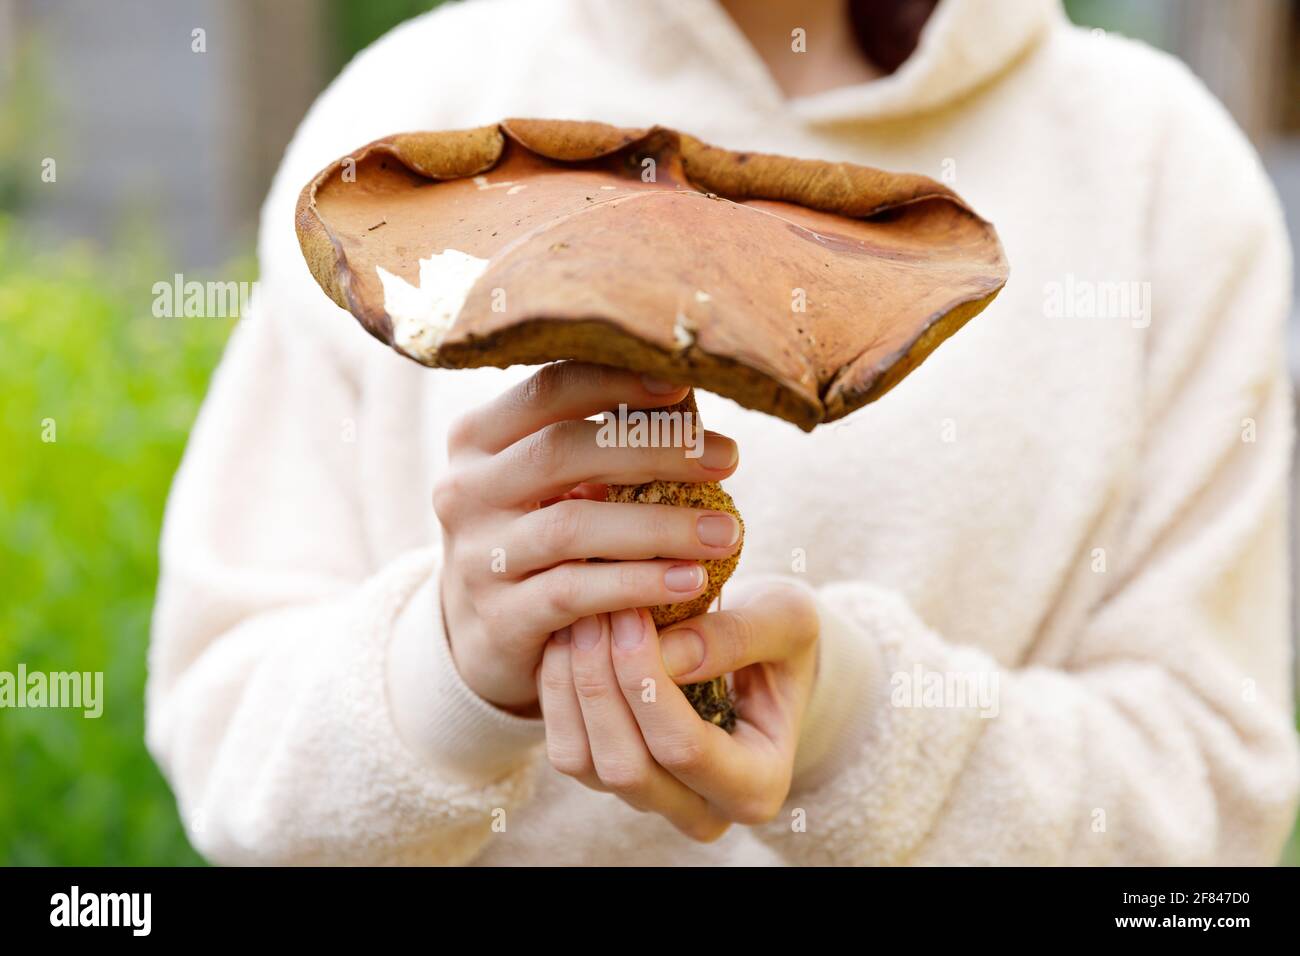 Weibliche Hand hält rohen essbaren Pilz mit brauner Kappe Penny Bun im Herbst Wald Hintergrund. Ernte große Zeps Pilze in der natürlichen Umwelt Stockfoto